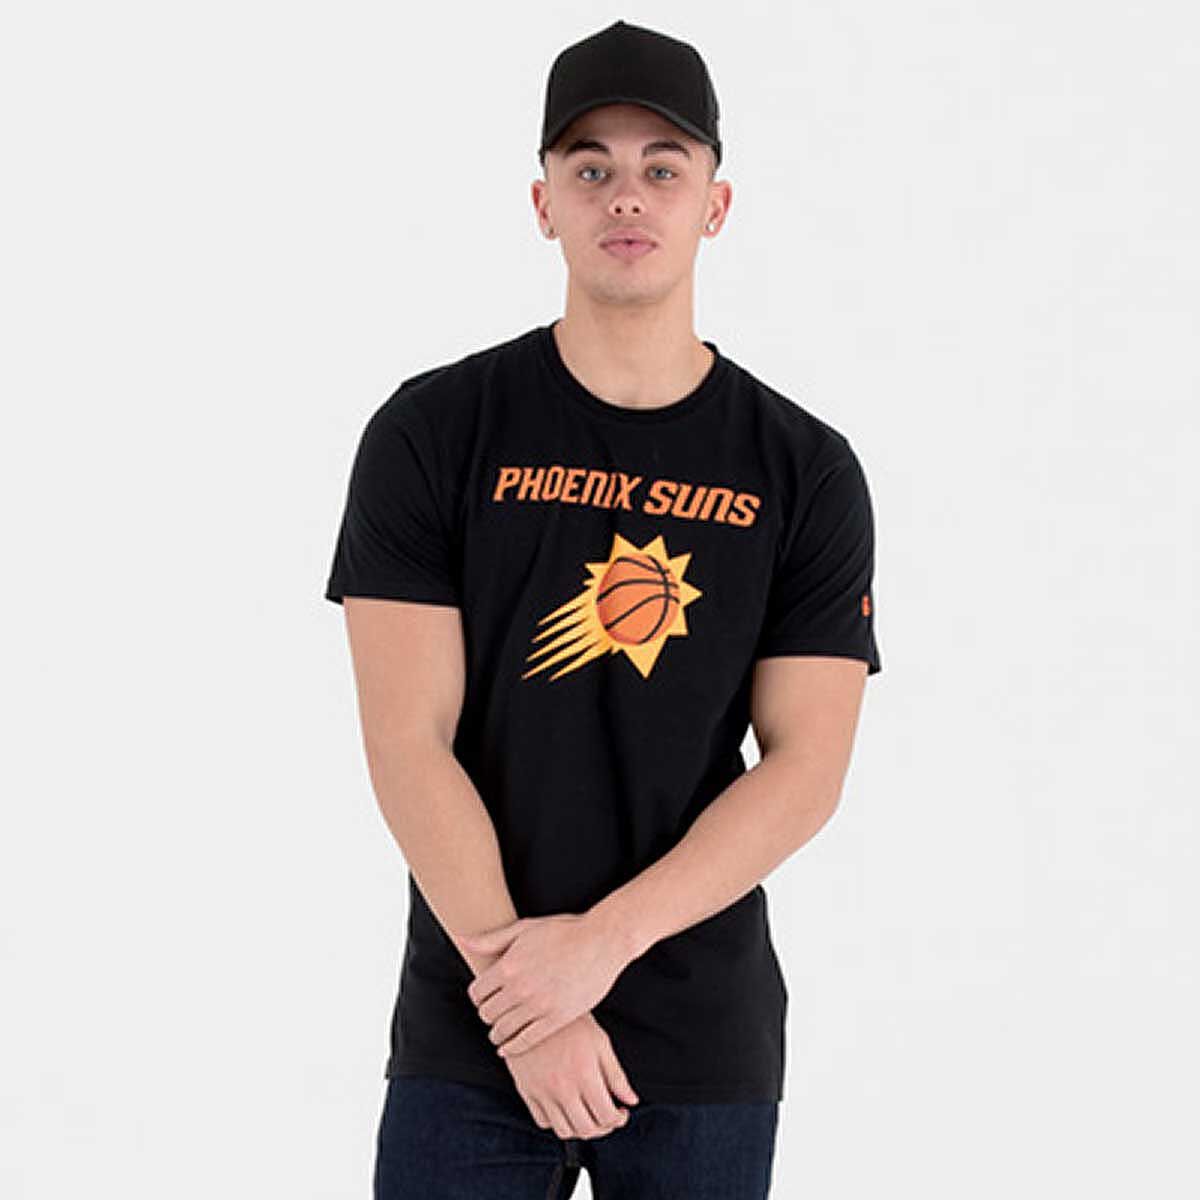 Kaufen Sie NBA LOGO PHOENIX SUNS T-SHIRT für N/A 0.0 auf KICKZ.com!